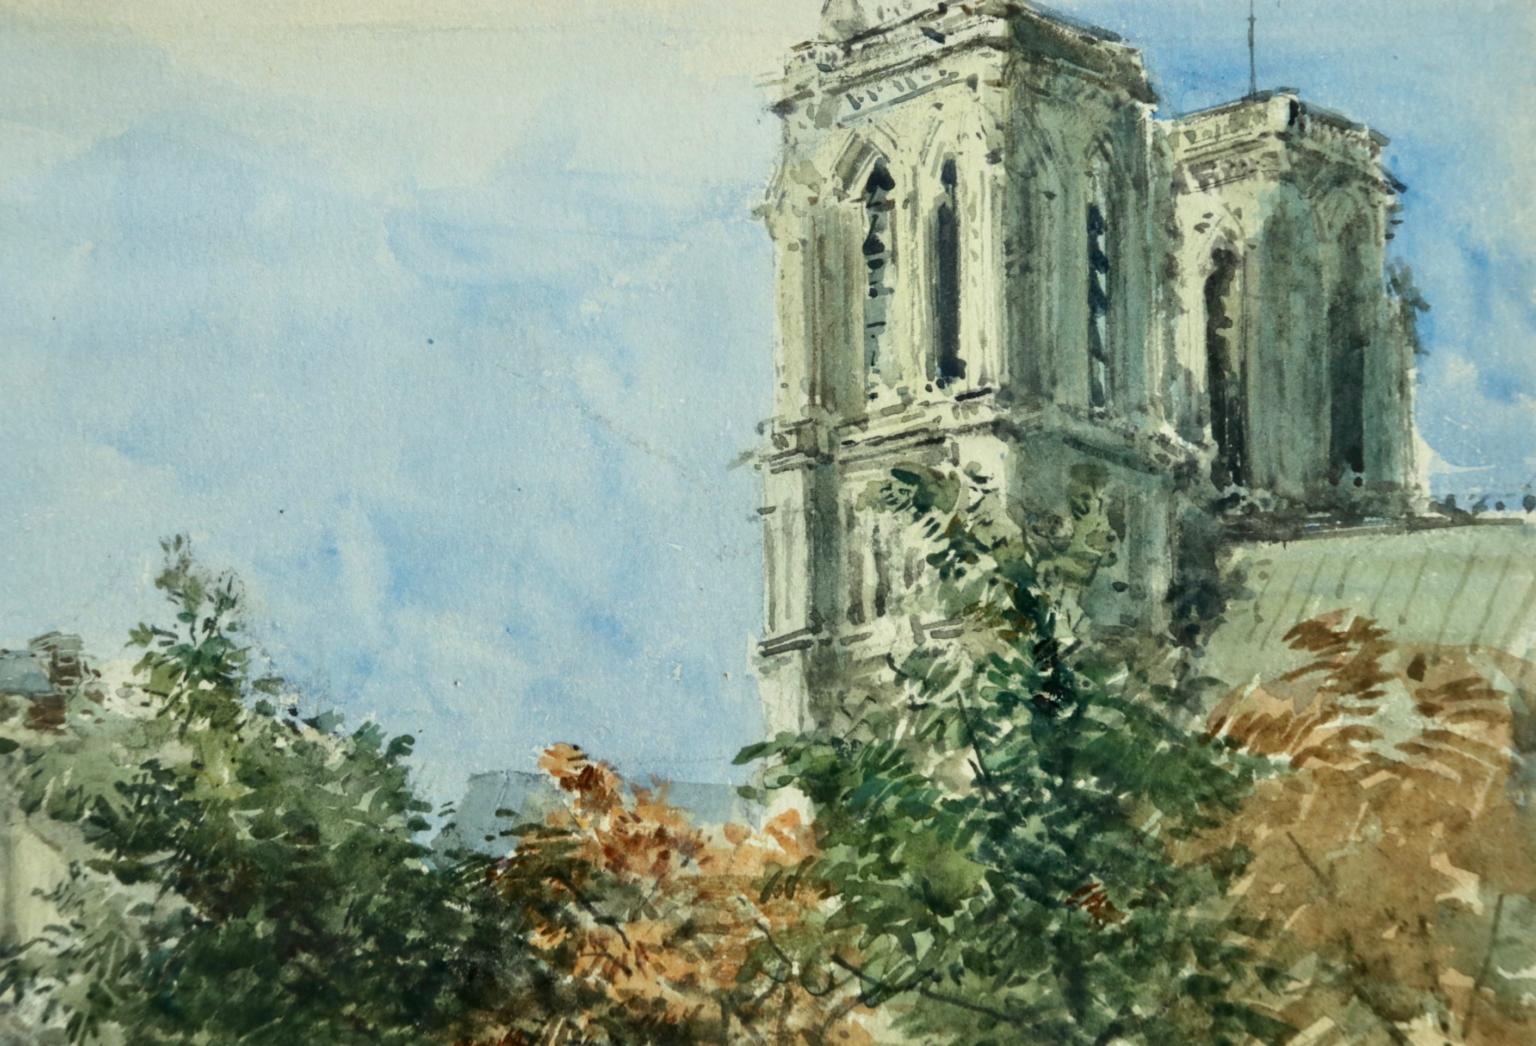 Vue du de la Cit avec la cathédrale Notre-Dame, Paris par Henri Harpignies - École de Barbizon Painting par Henri Joseph Harpignies